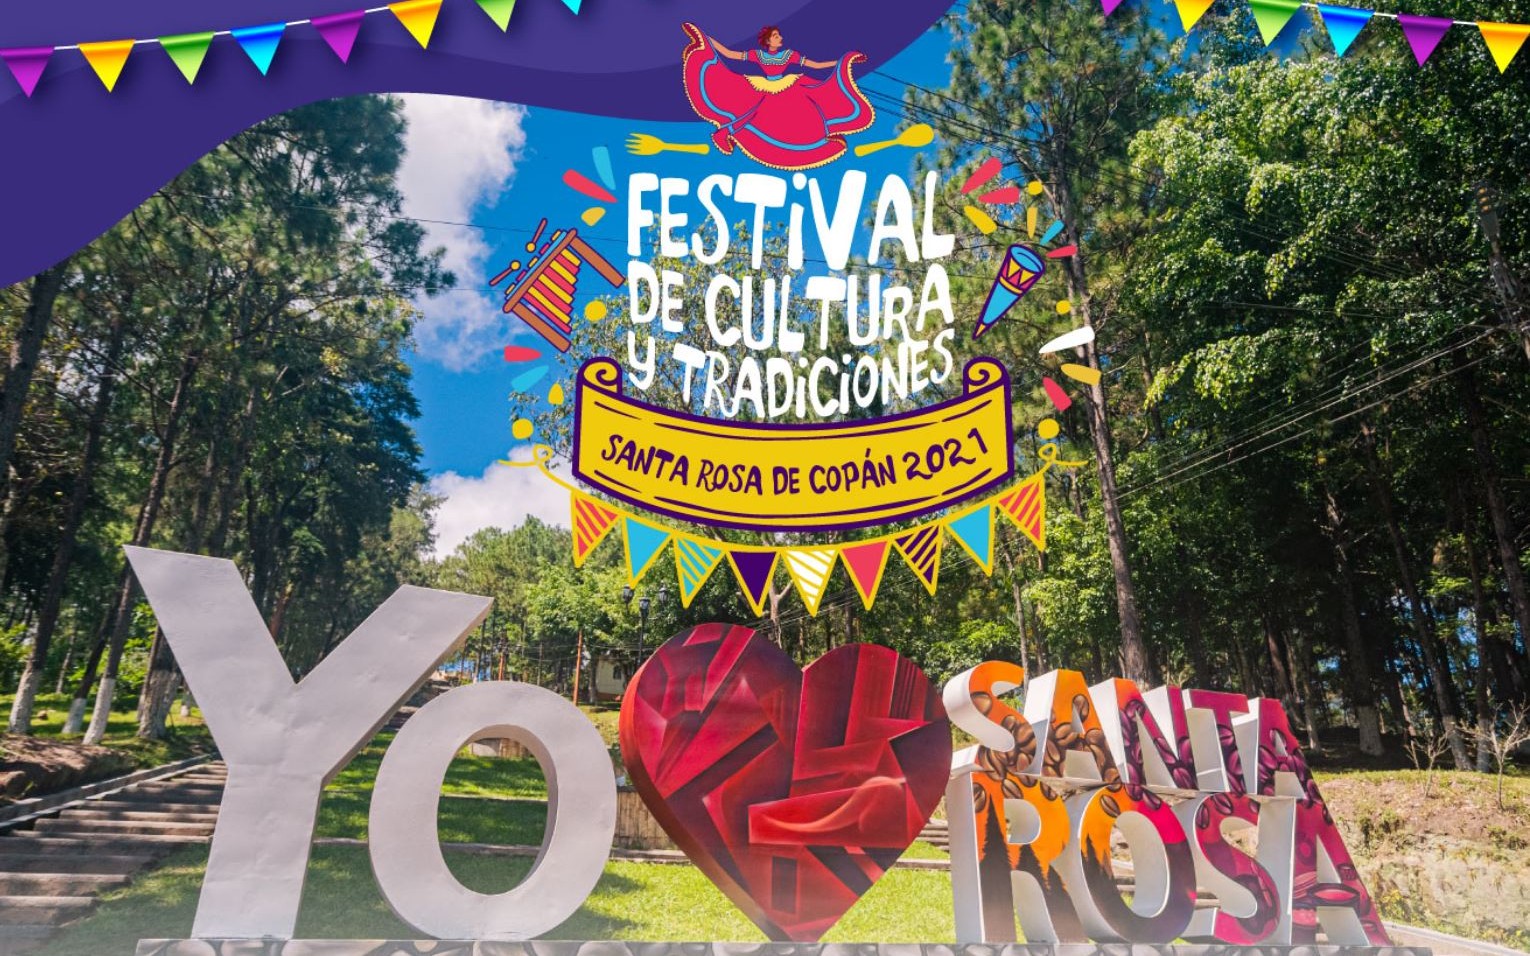 Asiste al Festival de Cultura y Tradiciones en Santa Rosa de Copán